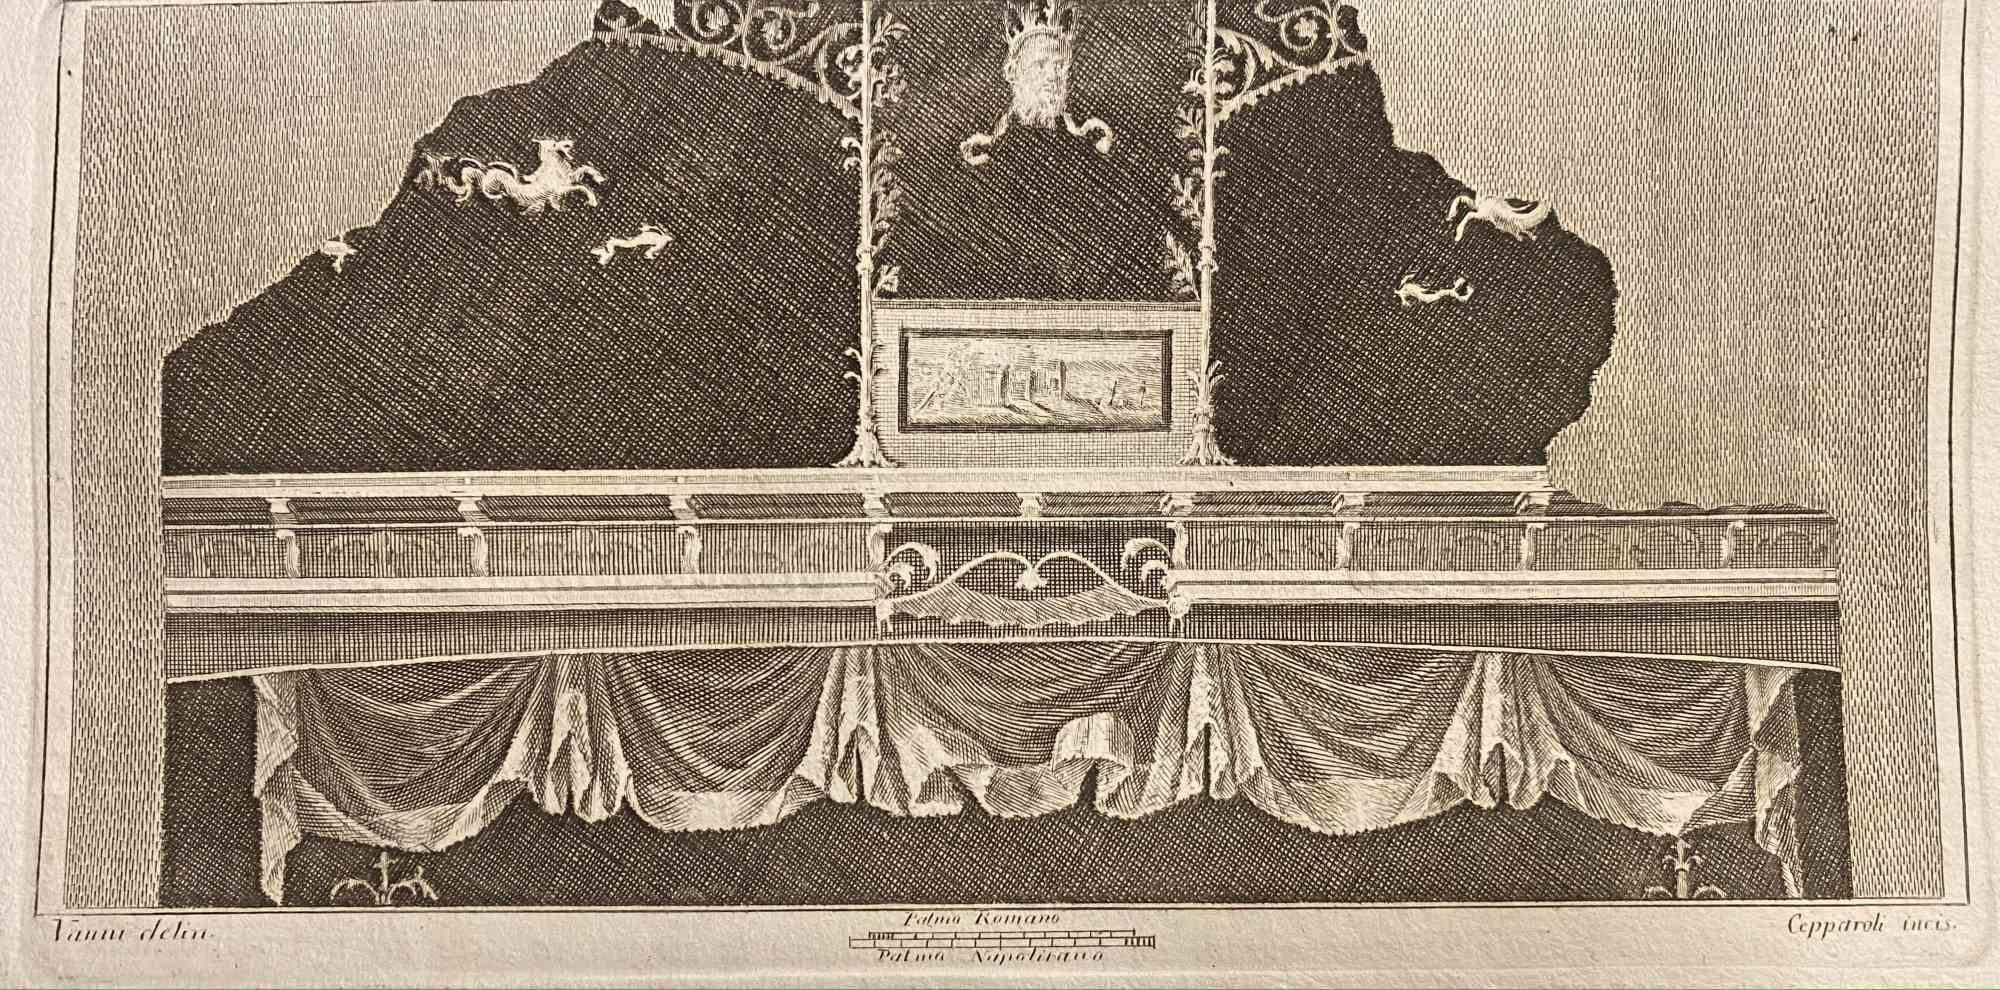 Style ornemental pompéien  Fresque des "Antiquités d'Herculanum" est une gravure sur papier réalisée par Francesco Cepparoli au 18ème siècle.

Signé sur la plaque.

Bonnes conditions.

La gravure appartient à la suite d'estampes "Antiquités